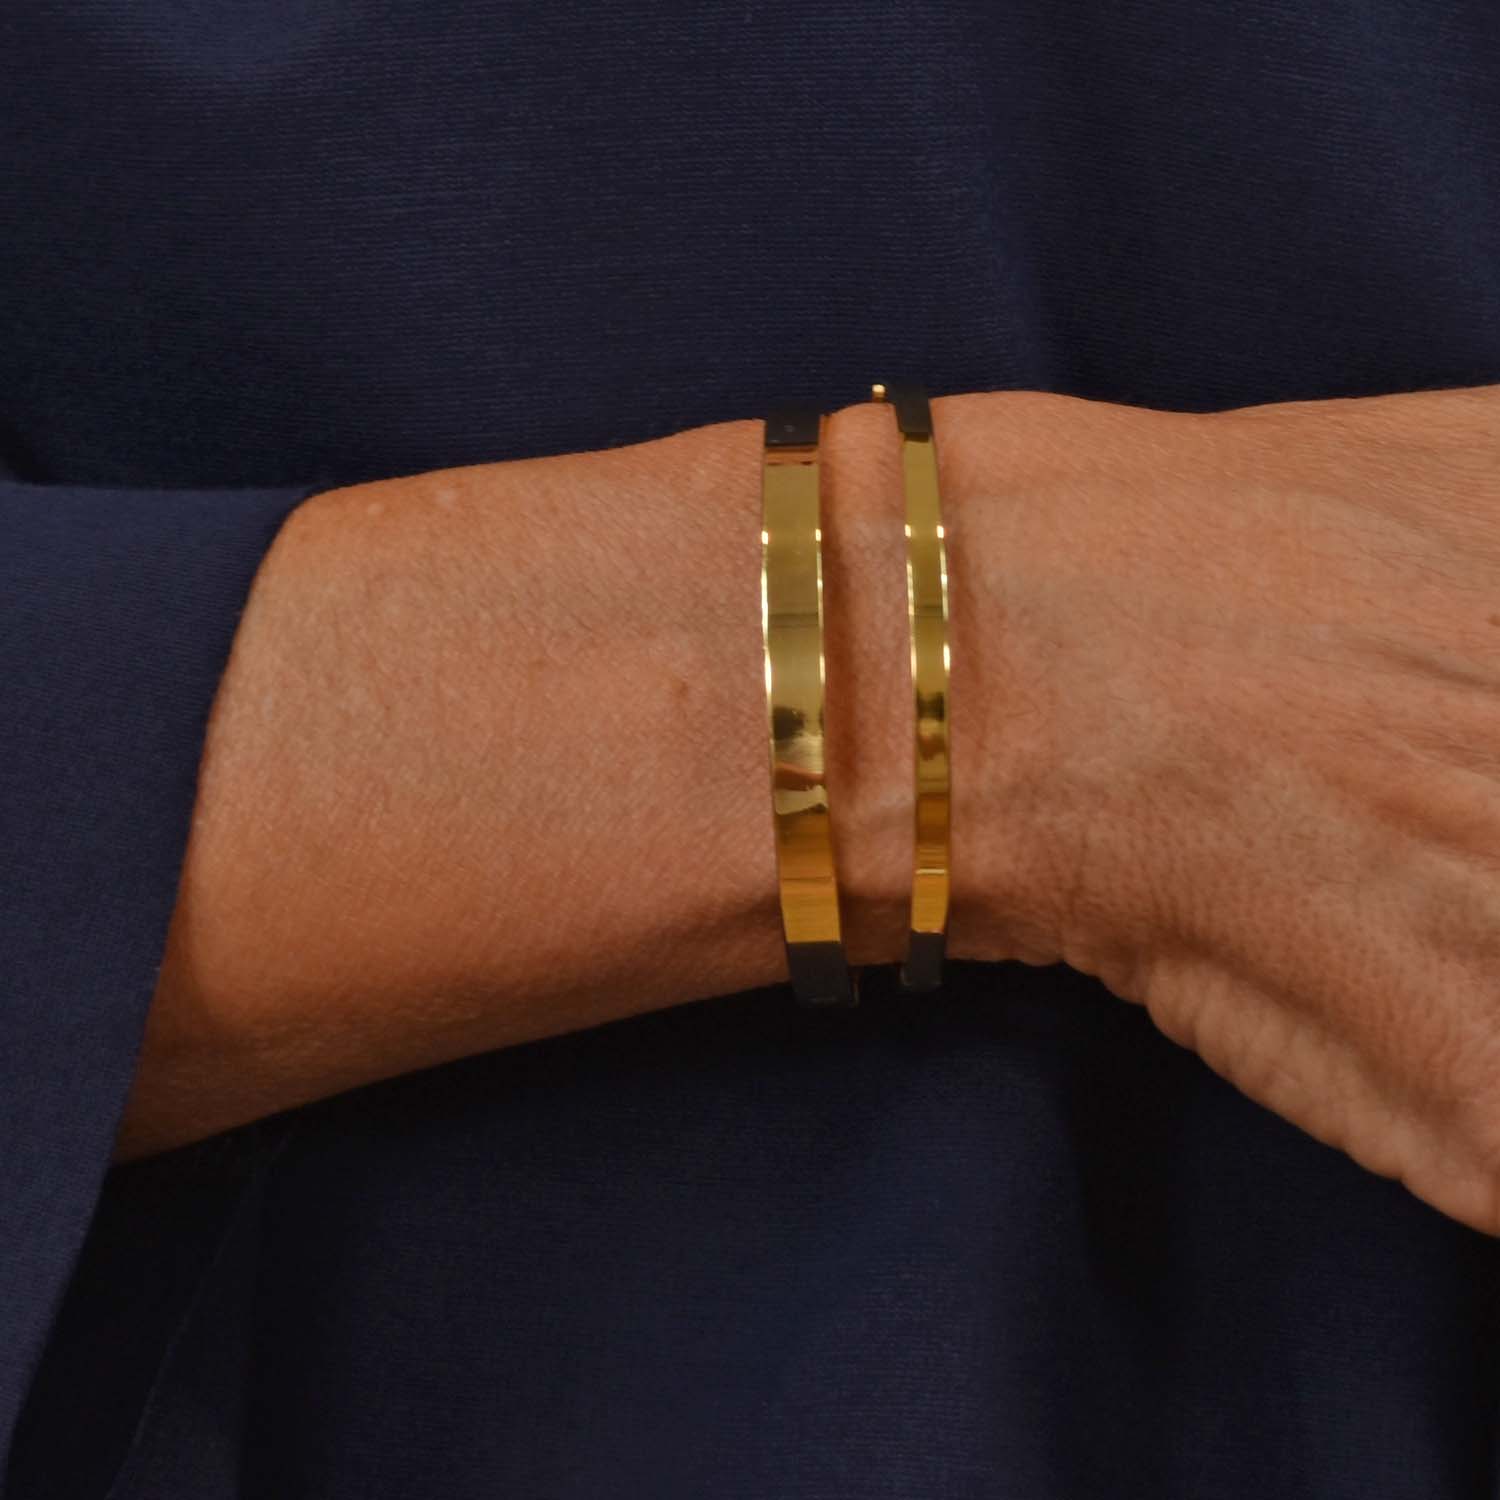 Thin golden bracelet
